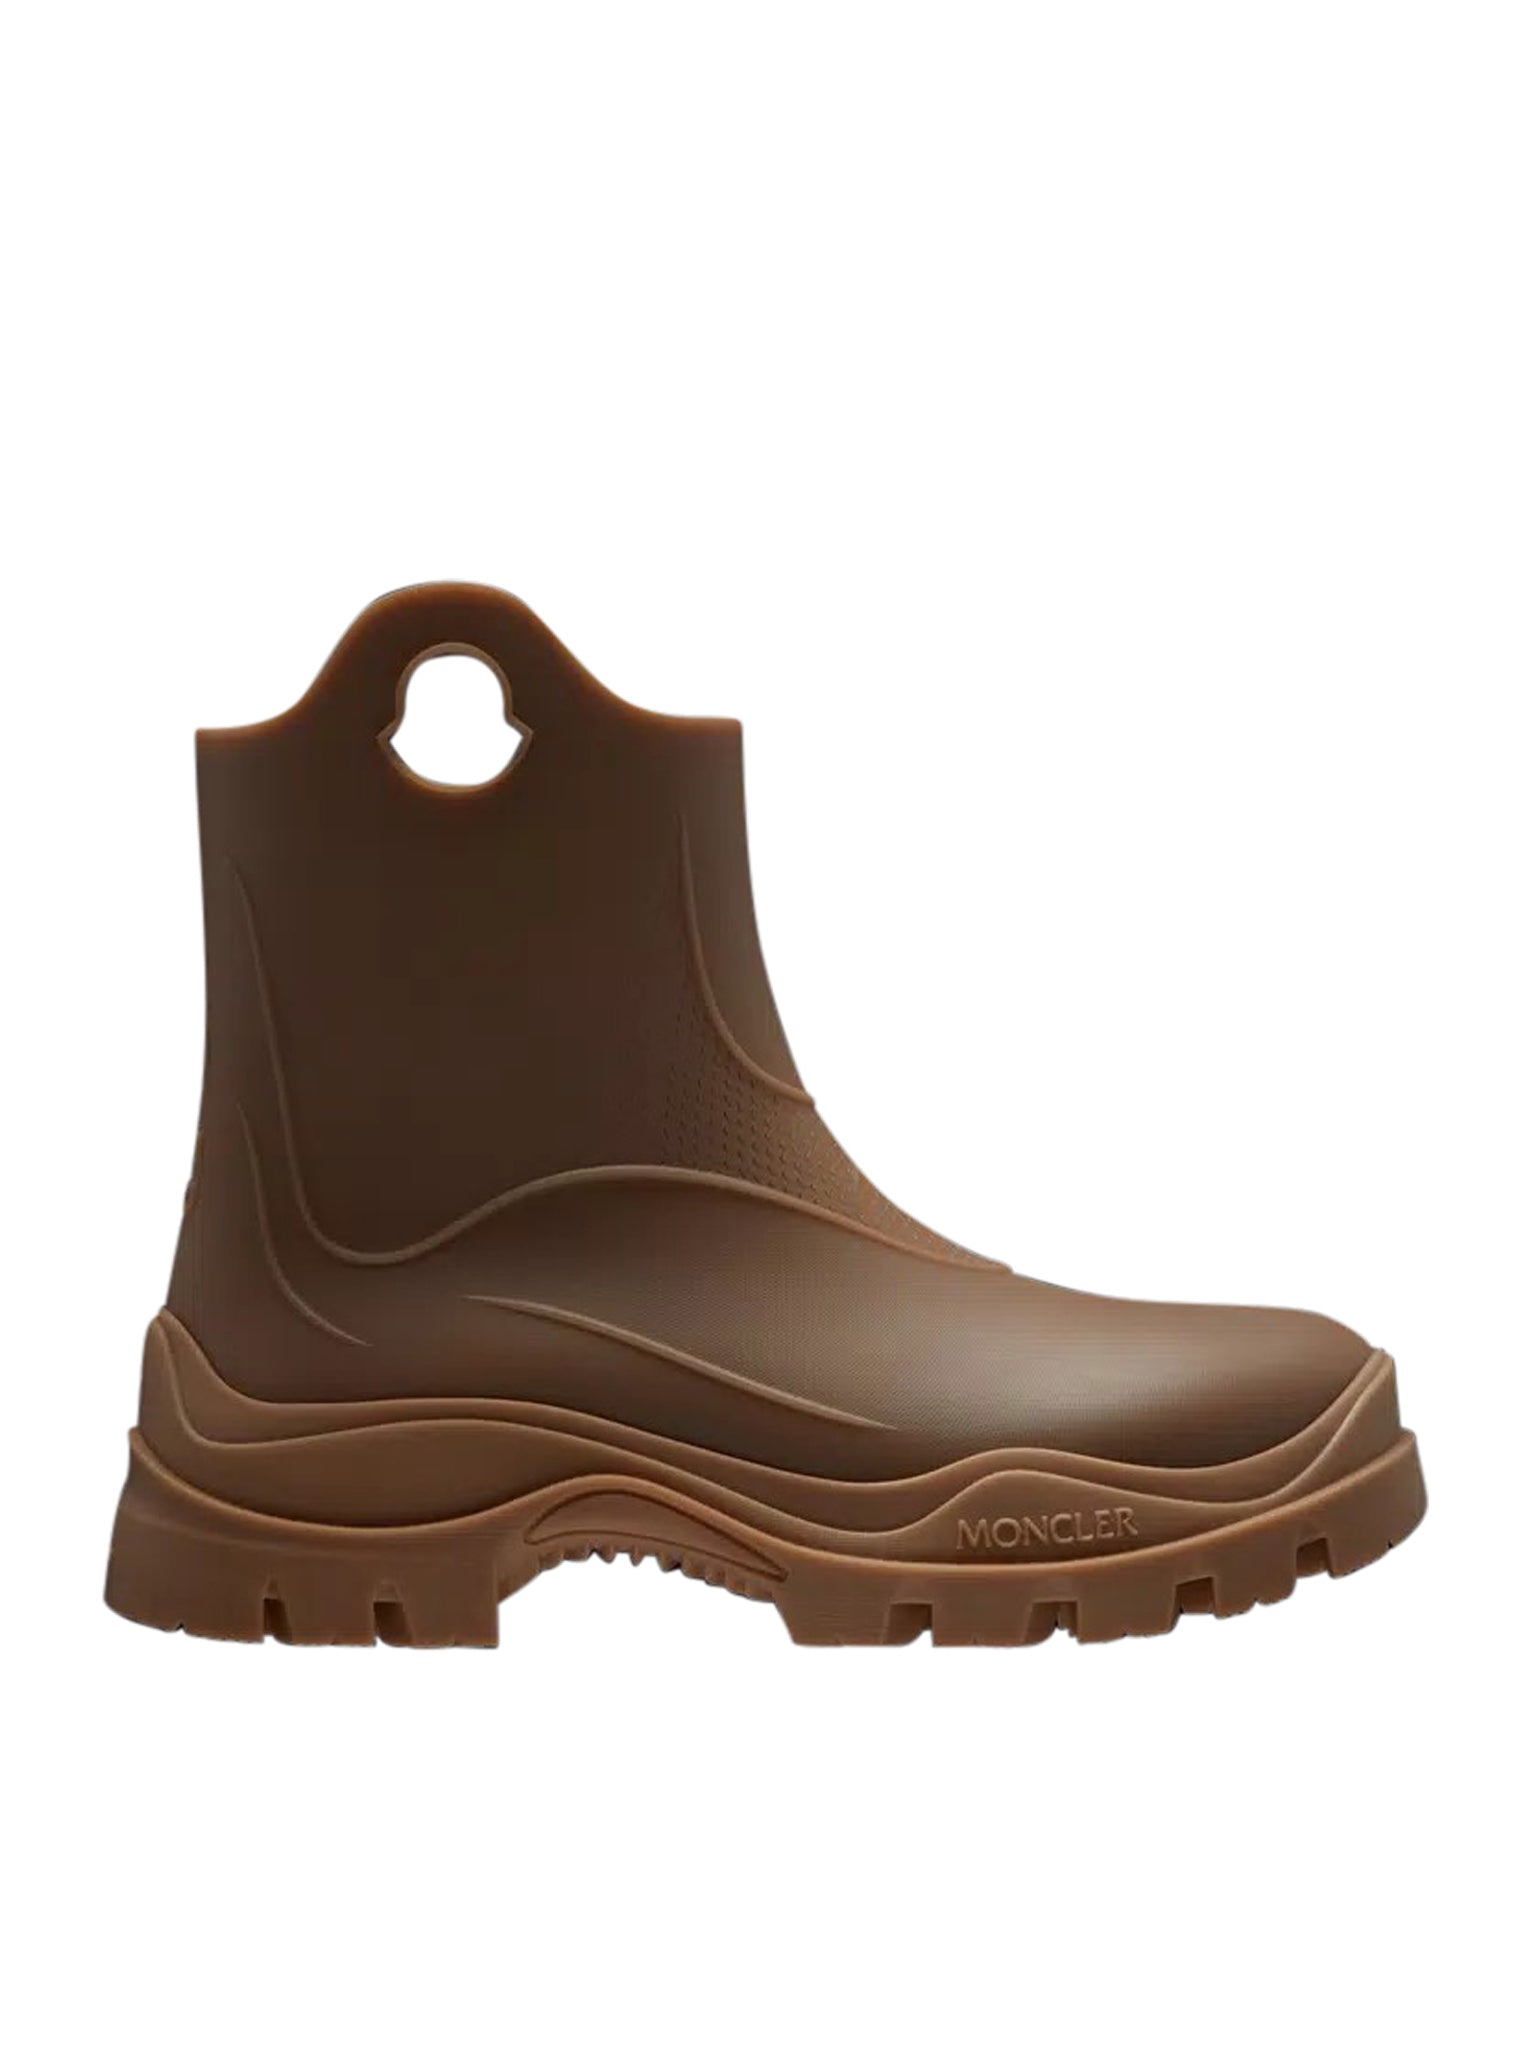 Misty rain boots